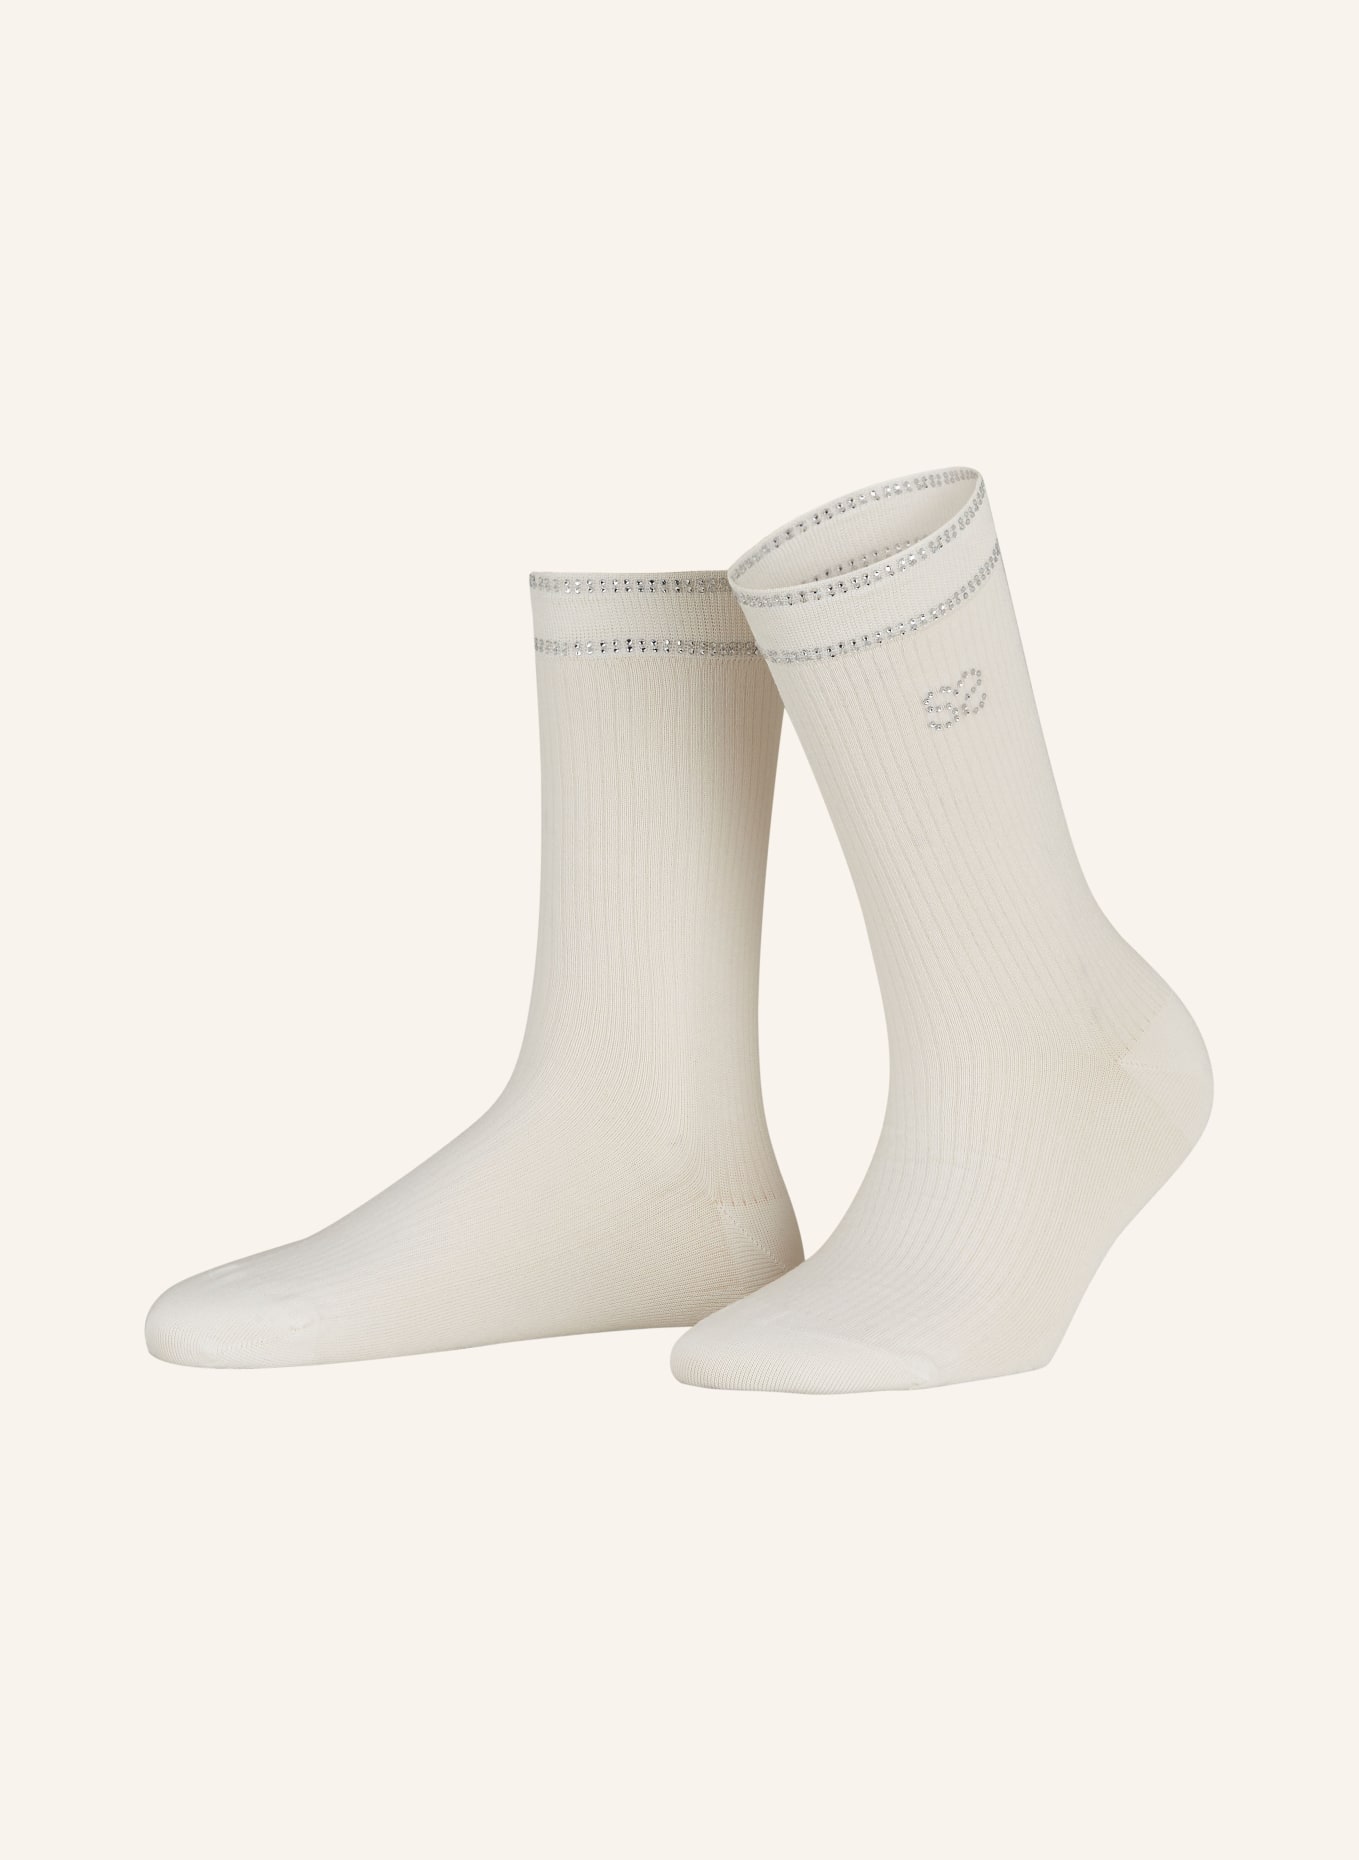 SANDRO Socken mit Schmucksteinen, Farbe: 10 WHITE (Bild 1)